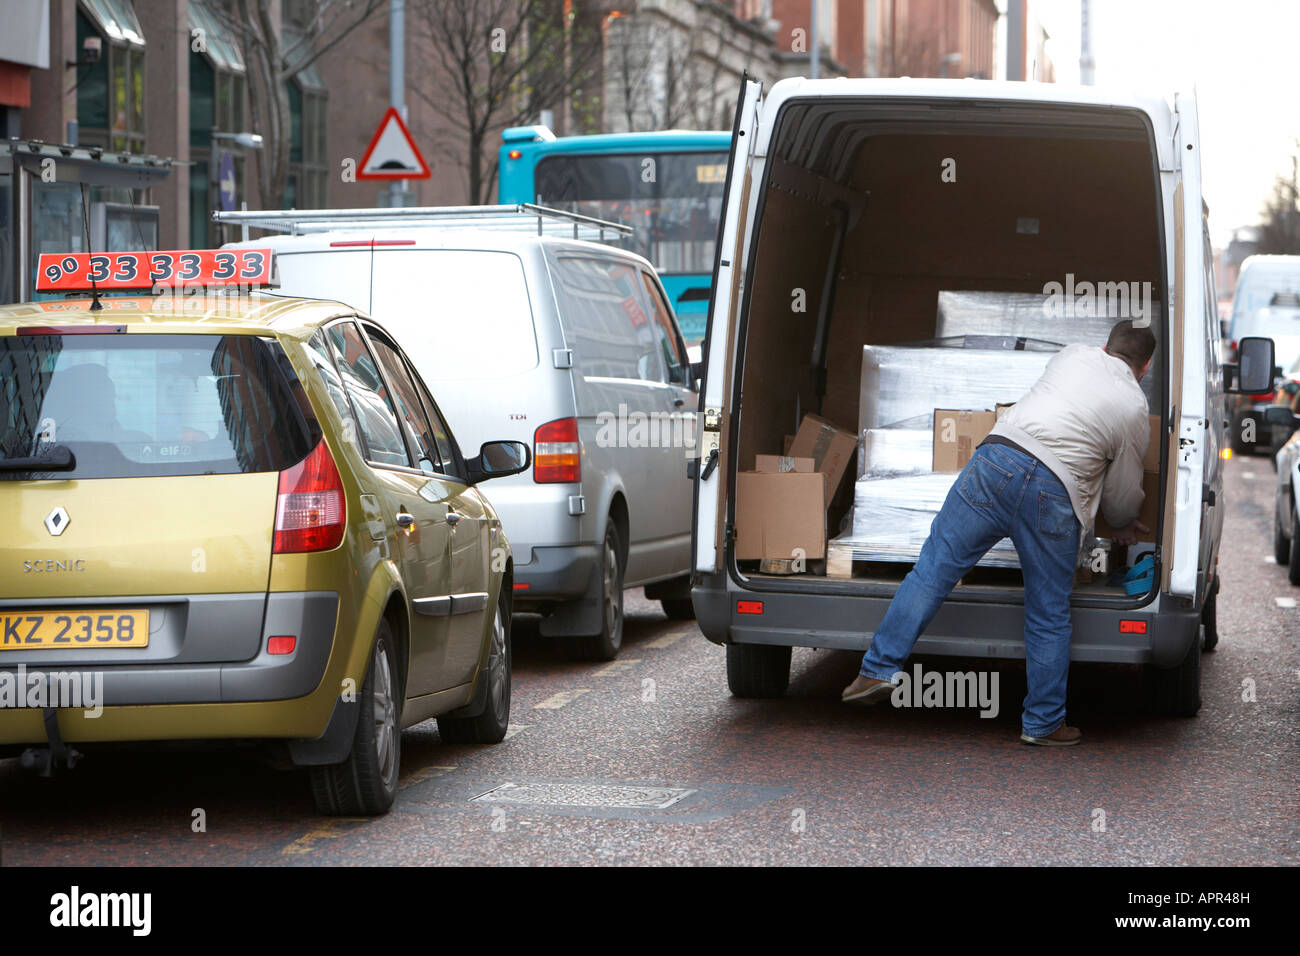 Mann entladen eingewickelt Palettenboxen aus van Doppel geparkt auf der Straße mit Verkehr vorbei Belfast Nordirland Vereinigtes Königreich Stockfoto